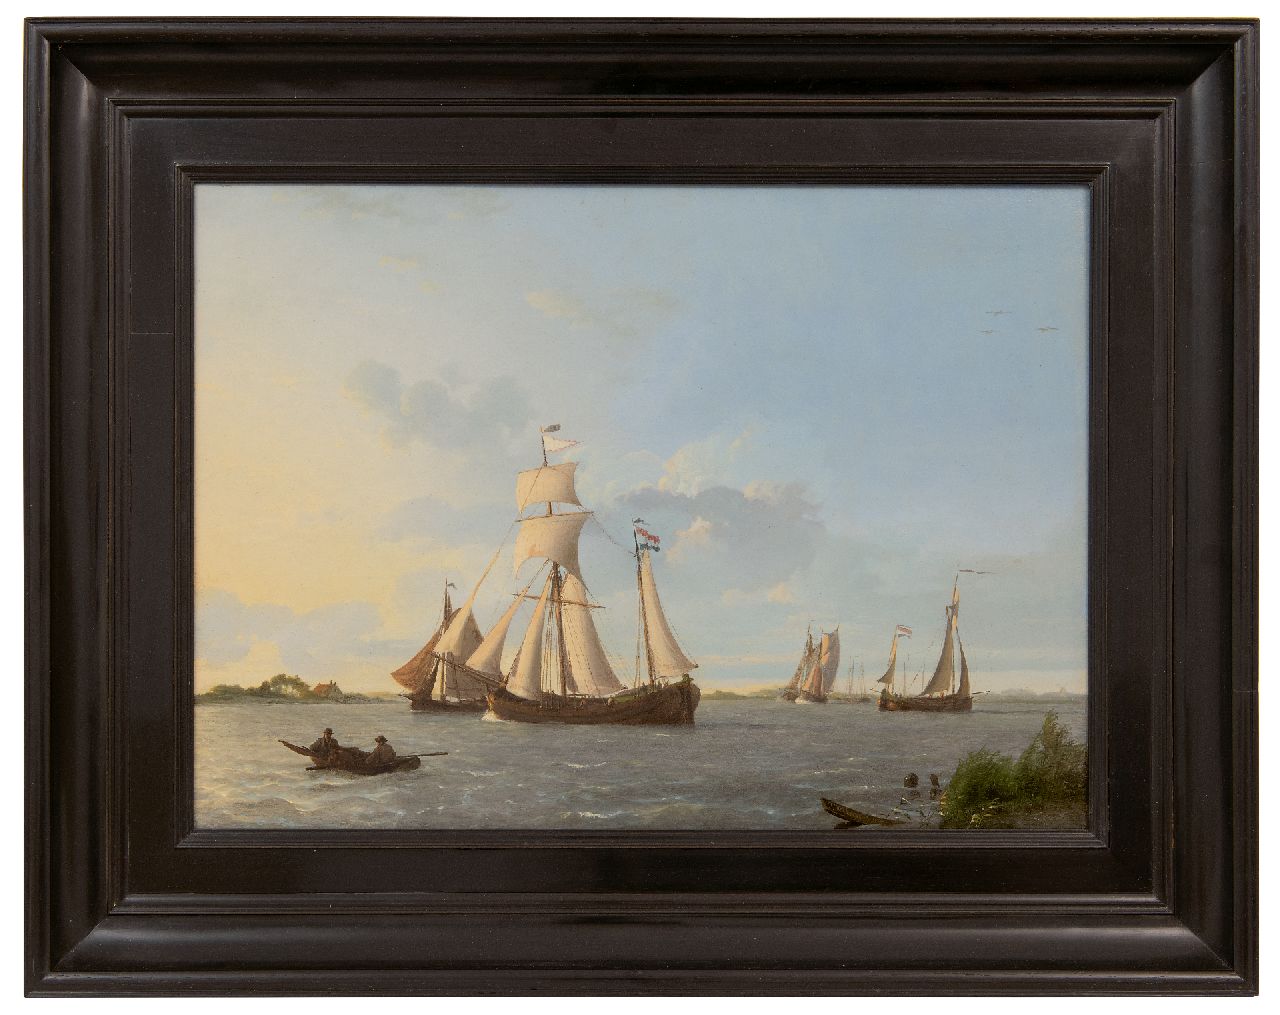 Koekkoek J.  | Johannes Koekkoek | Schilderijen te koop aangeboden | Laverende zeilschepen op Hollands binnenwater, olieverf op paneel 32,3 x 44,8 cm, gesigneerd rechtsonder en gedateerd 1829